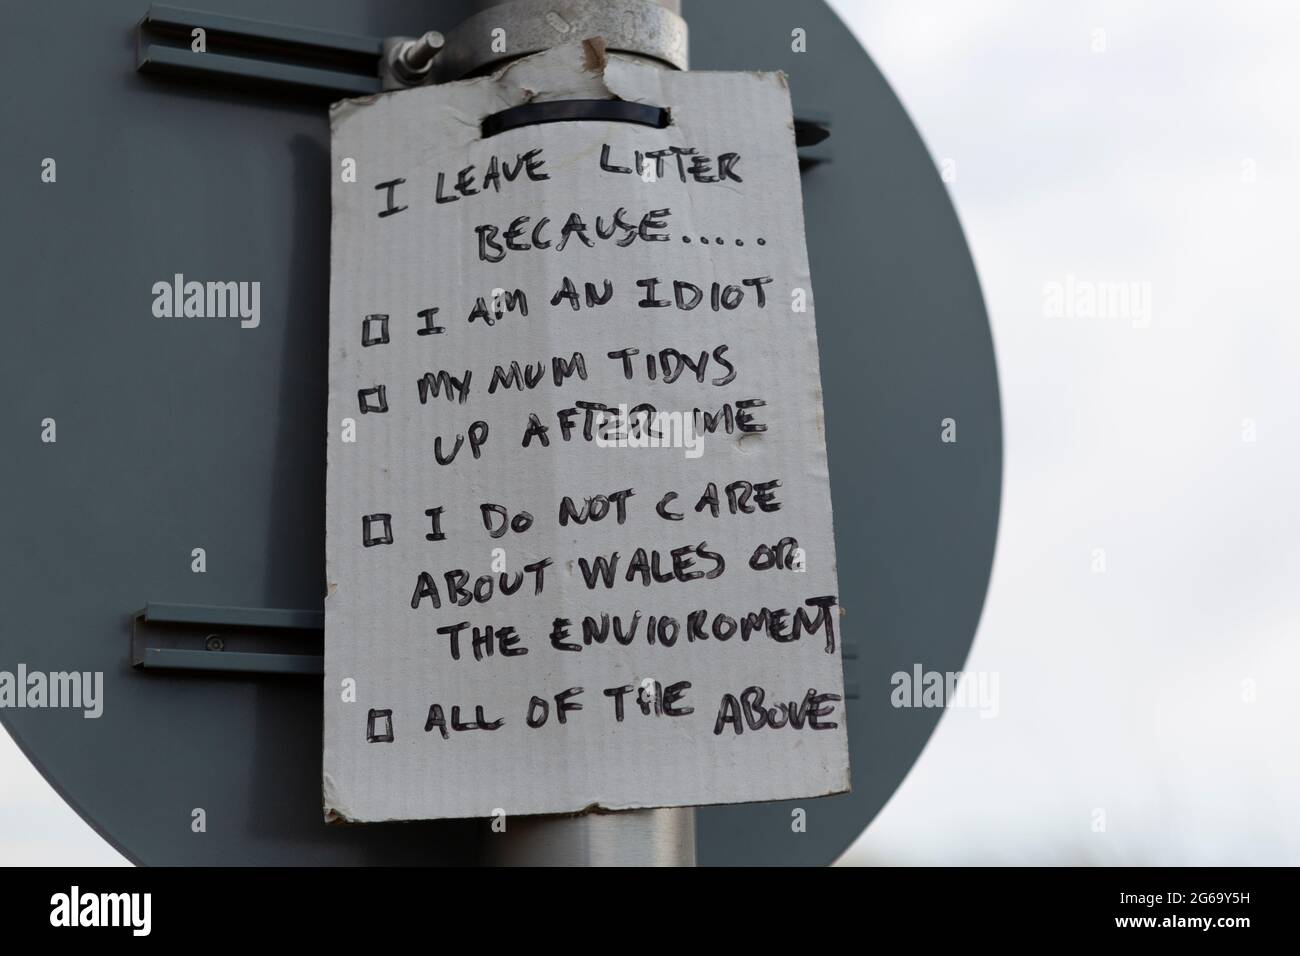 Humorvolles, handgemachtes Schild, das die Menschen ermutigt, ihren Abfall mit nach Hause zu nehmen. Aufgenommen in Pembrey Sands, Carmarthenshire, Wales. Stockfoto